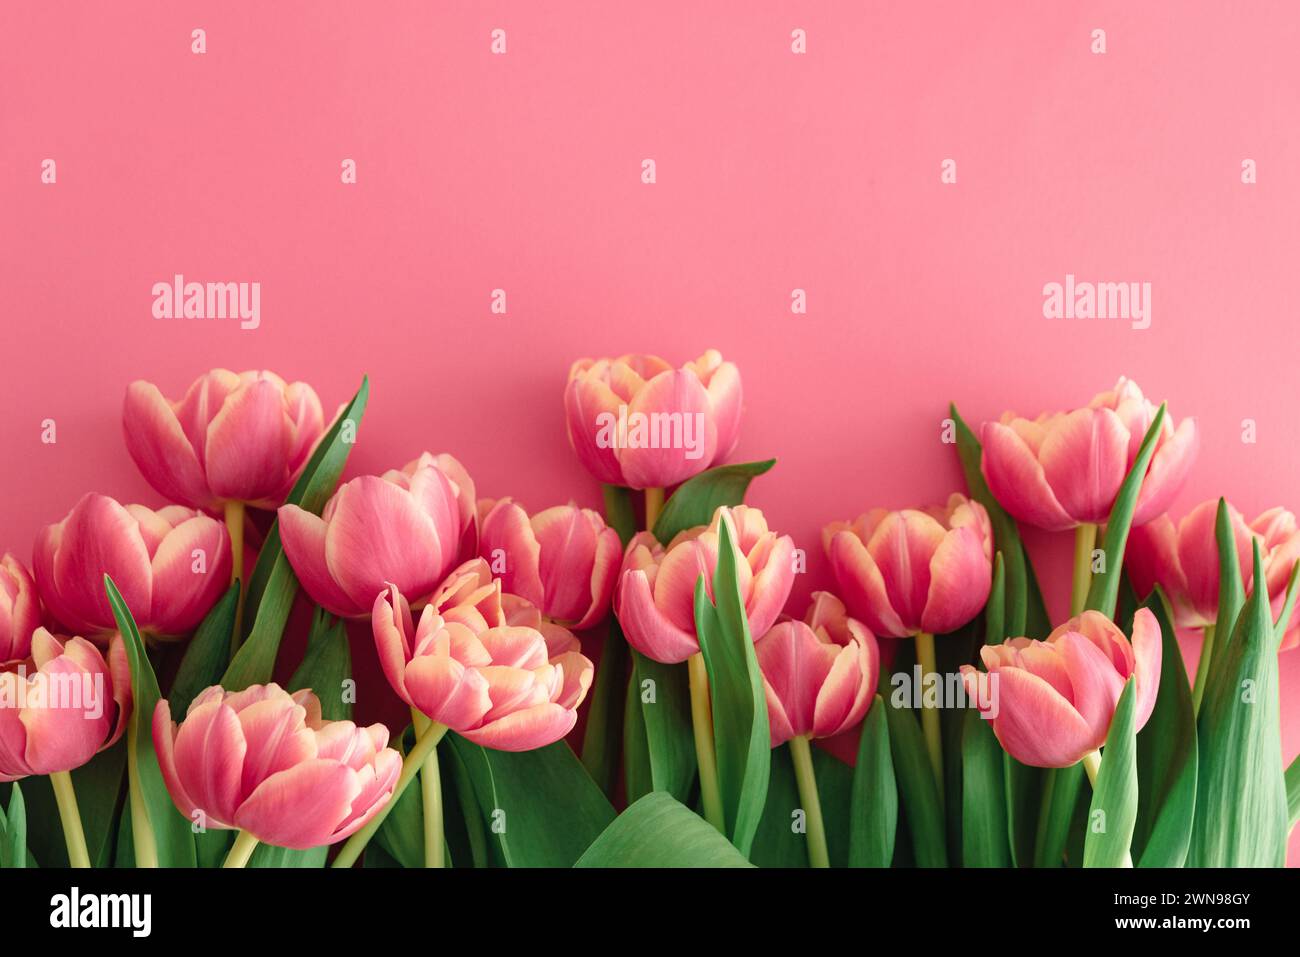 Bouquet de tulipes roses sur fond rose. Concept de célébration d'anniversaire. Espace de copie. Vue de dessus Banque D'Images